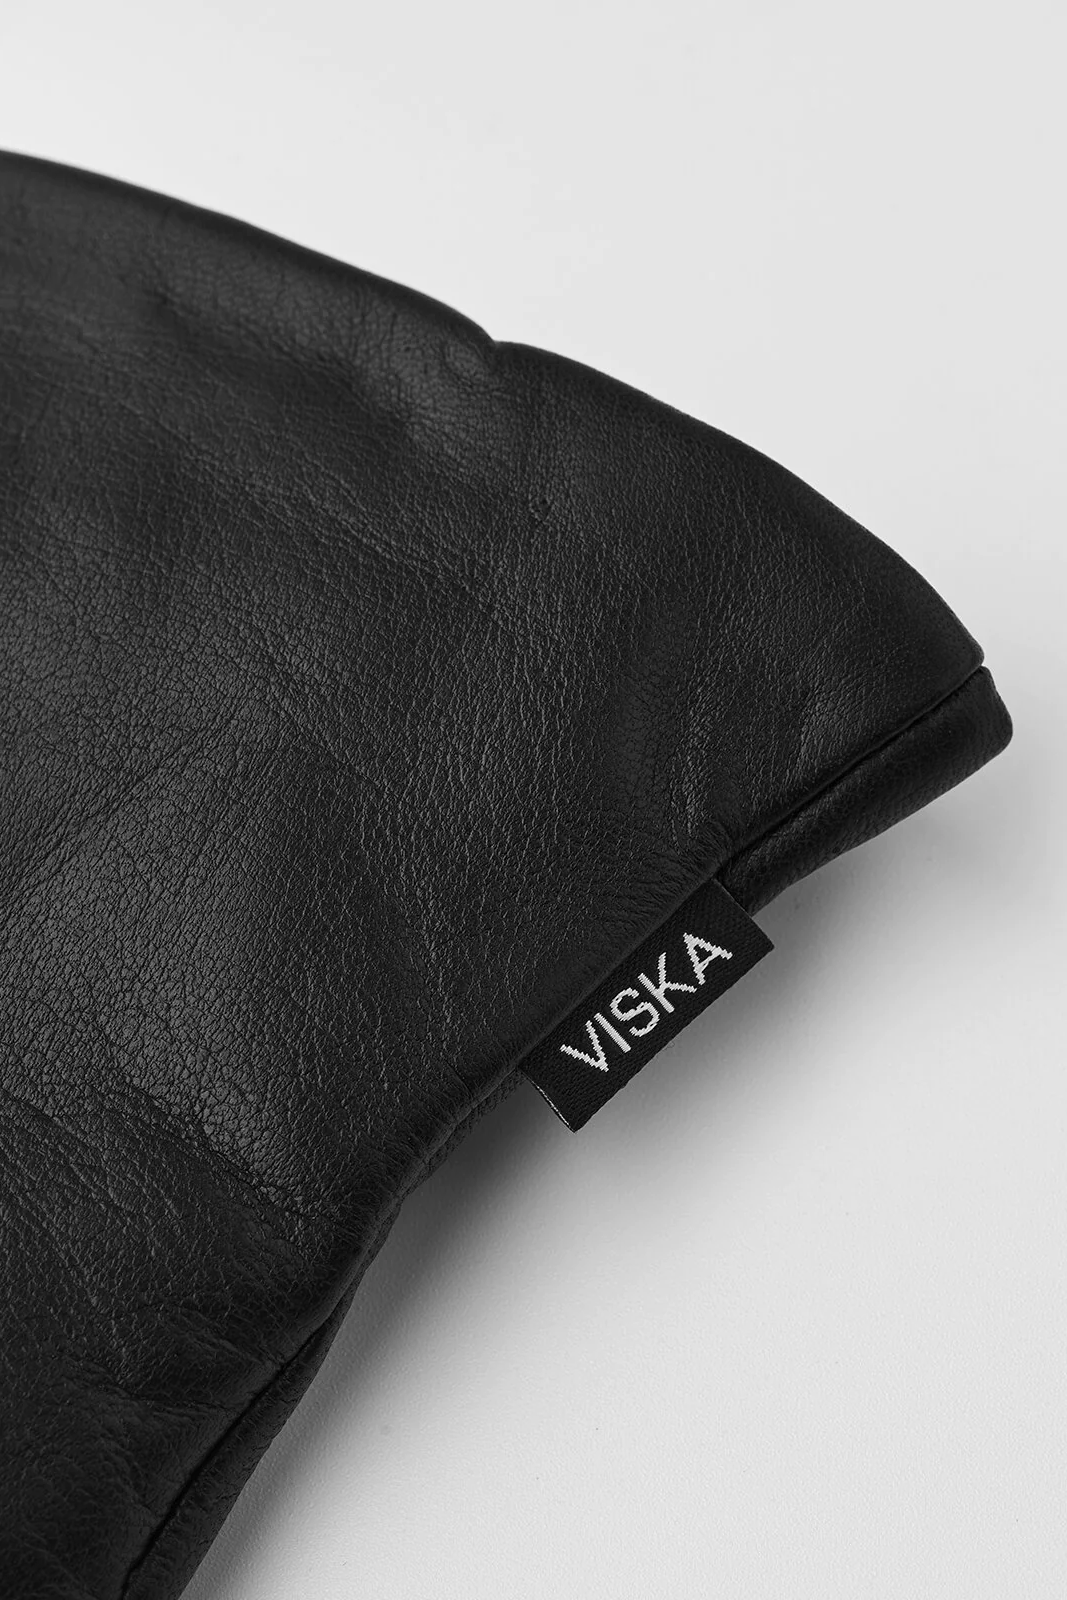 Hestra | Handsker | Kvist Leather Gloves, black